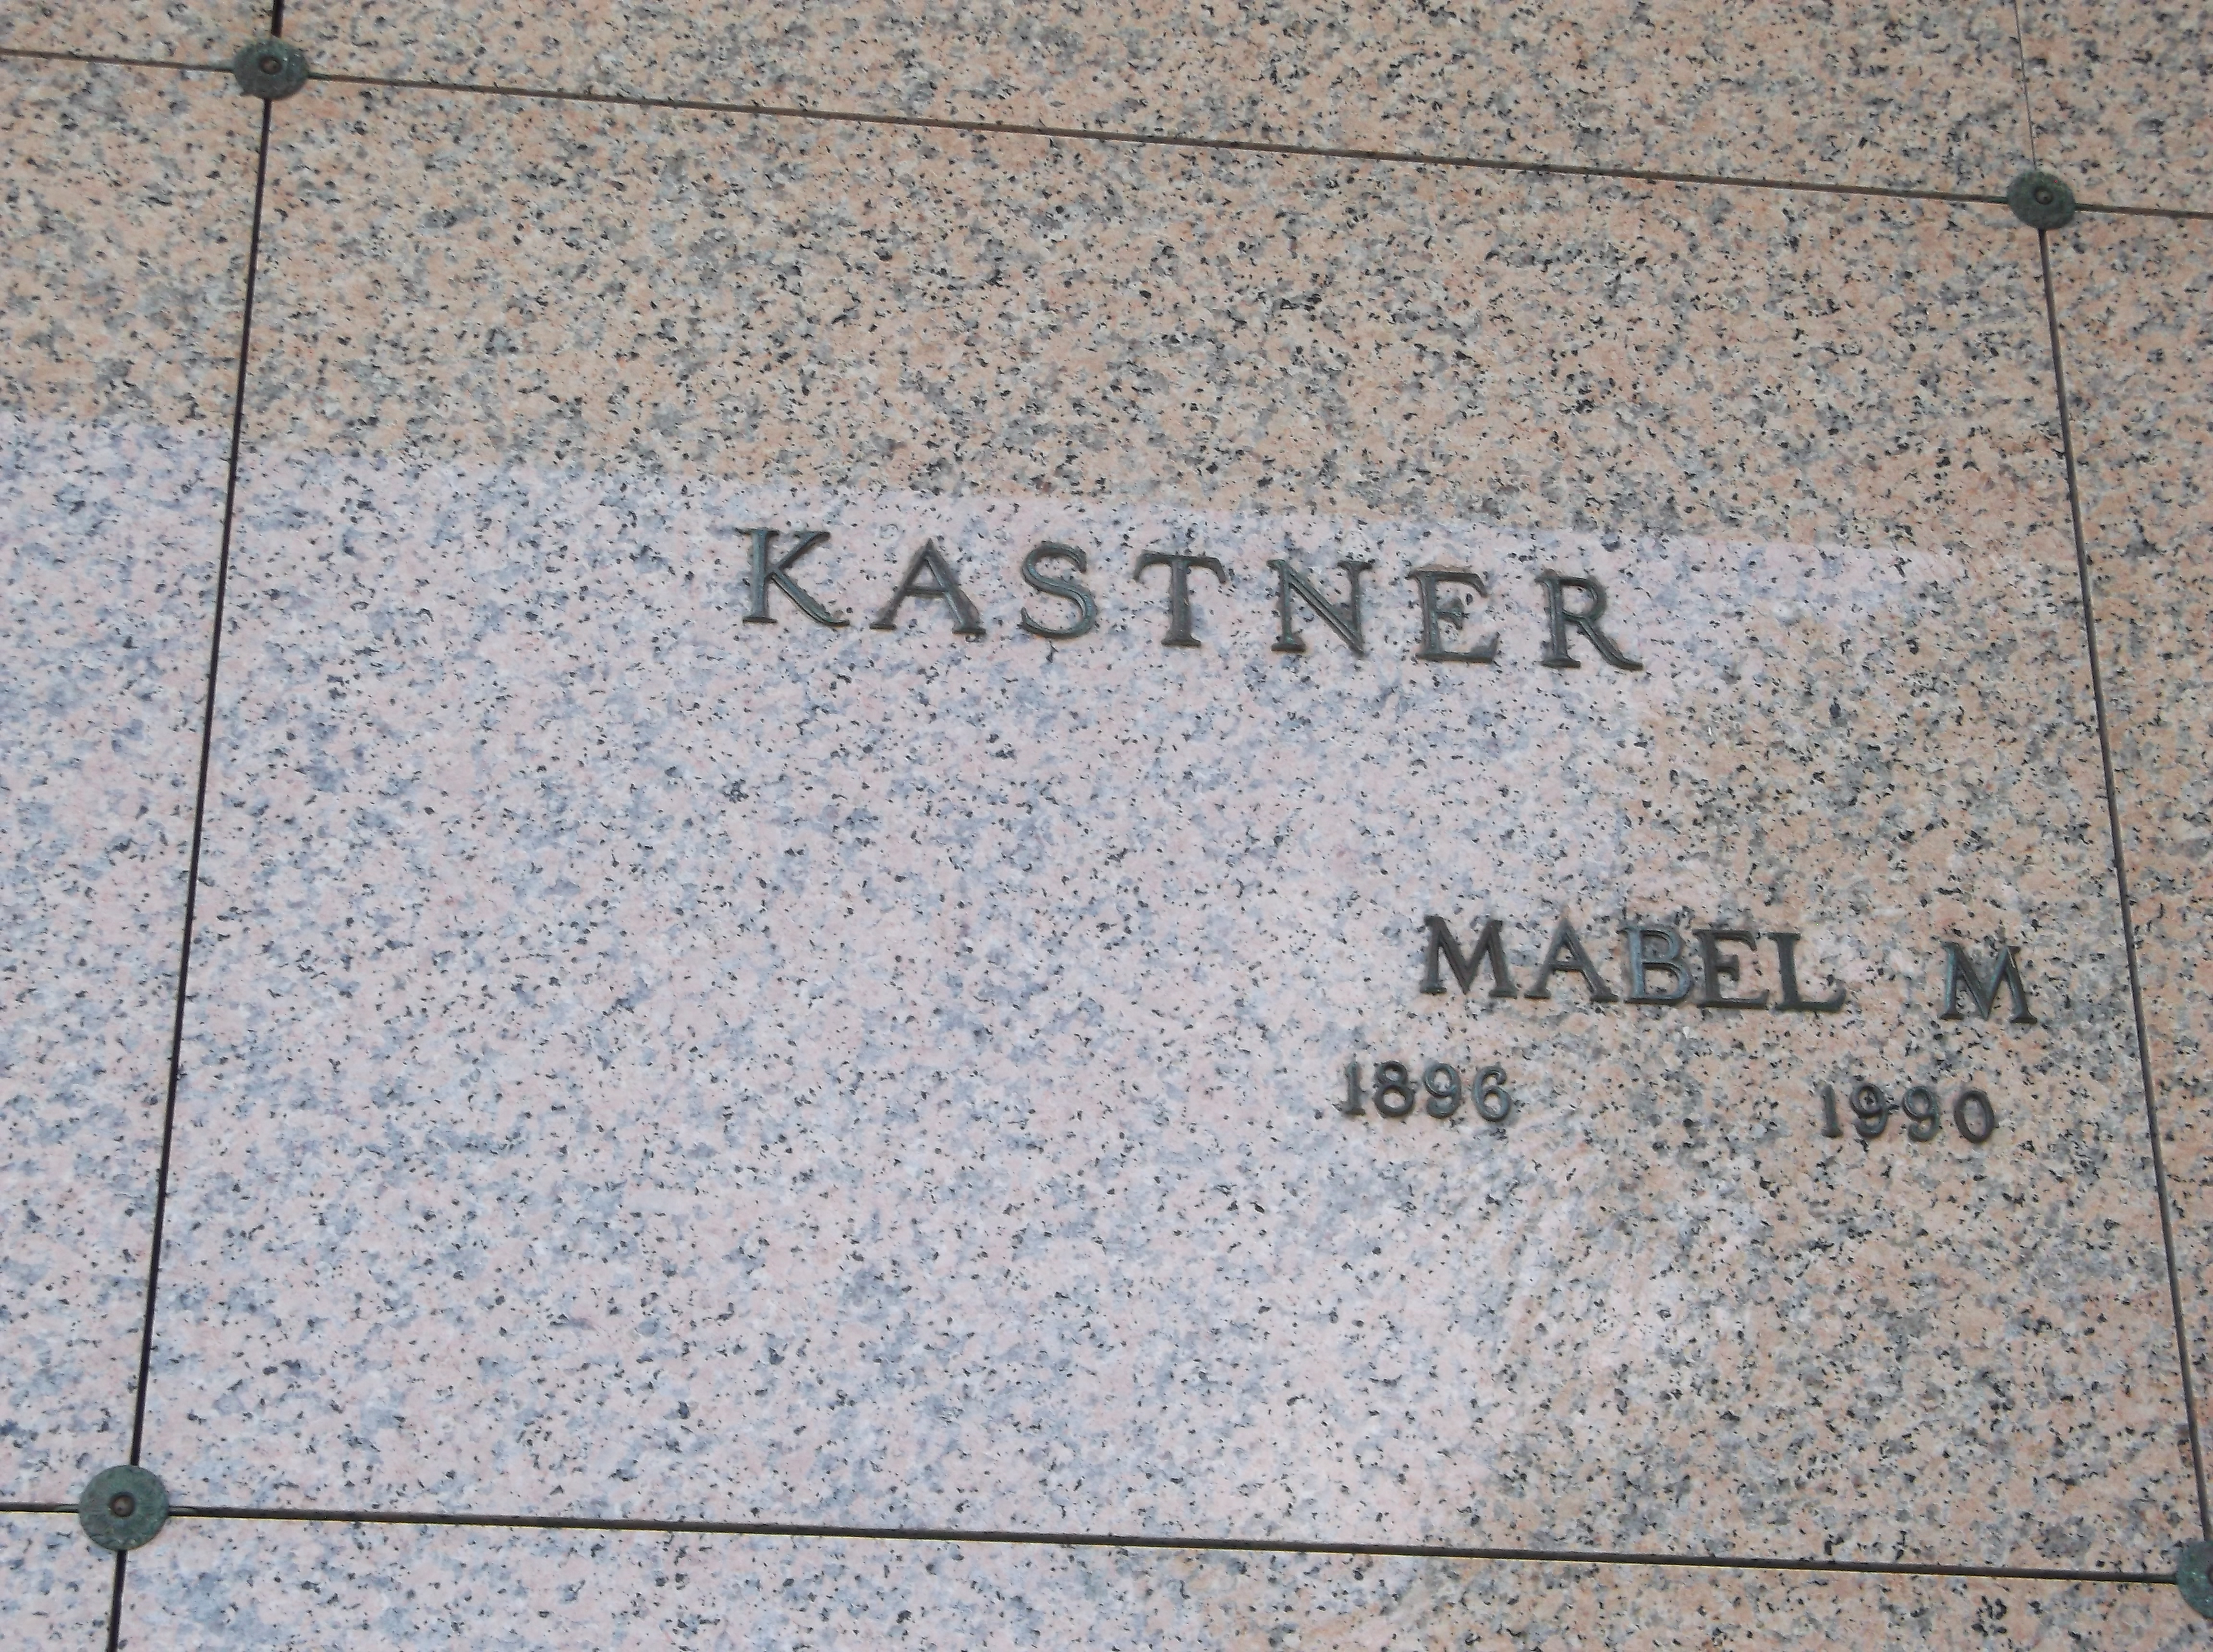 Mabel M Kastner